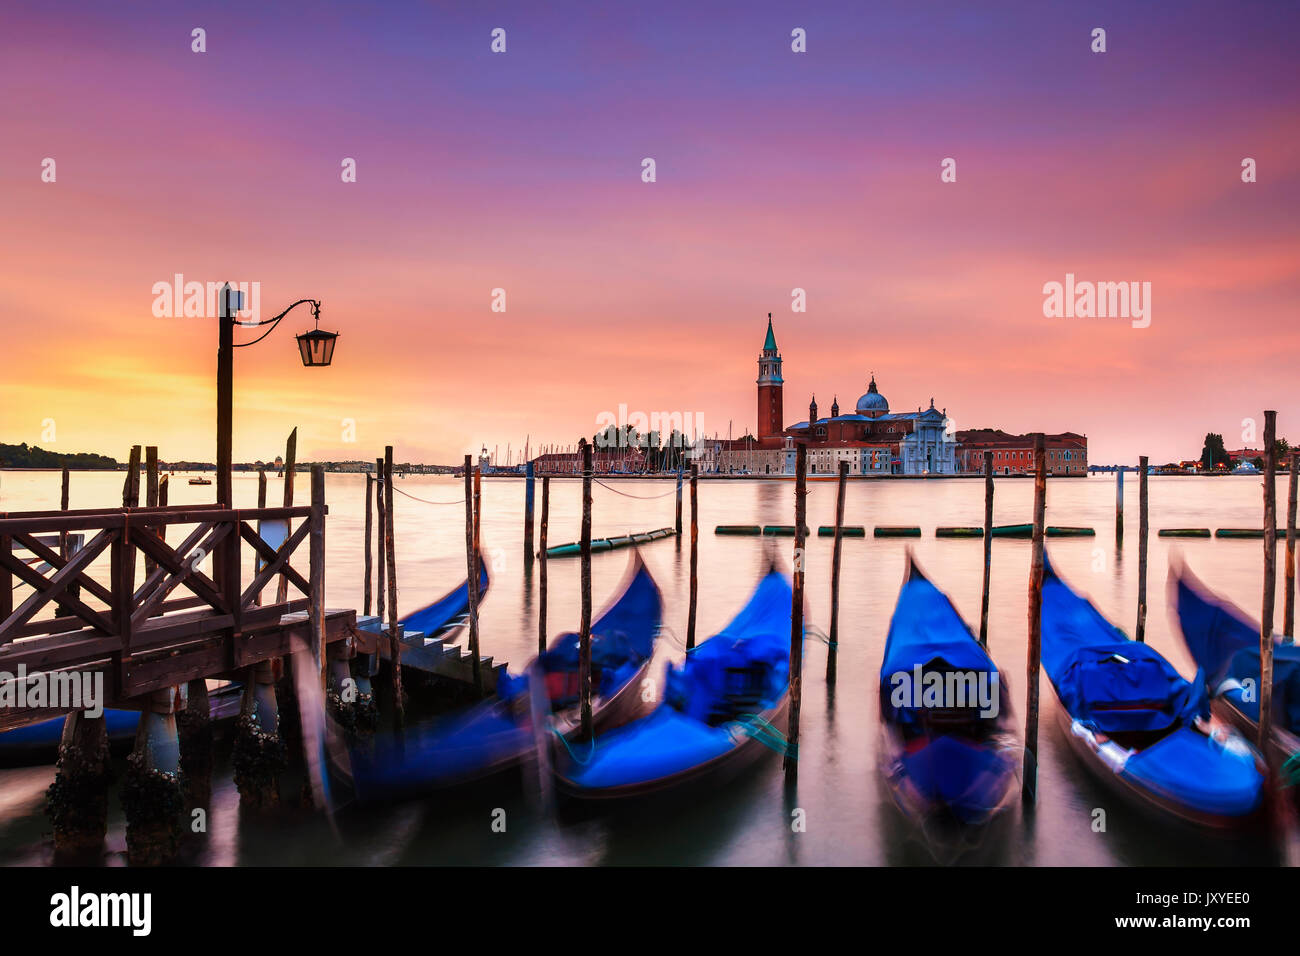 Vibrant dawn over the island of San Giorgio Maggiore seen from just off St. Mark's Square in Venice, Italy. Stock Photo